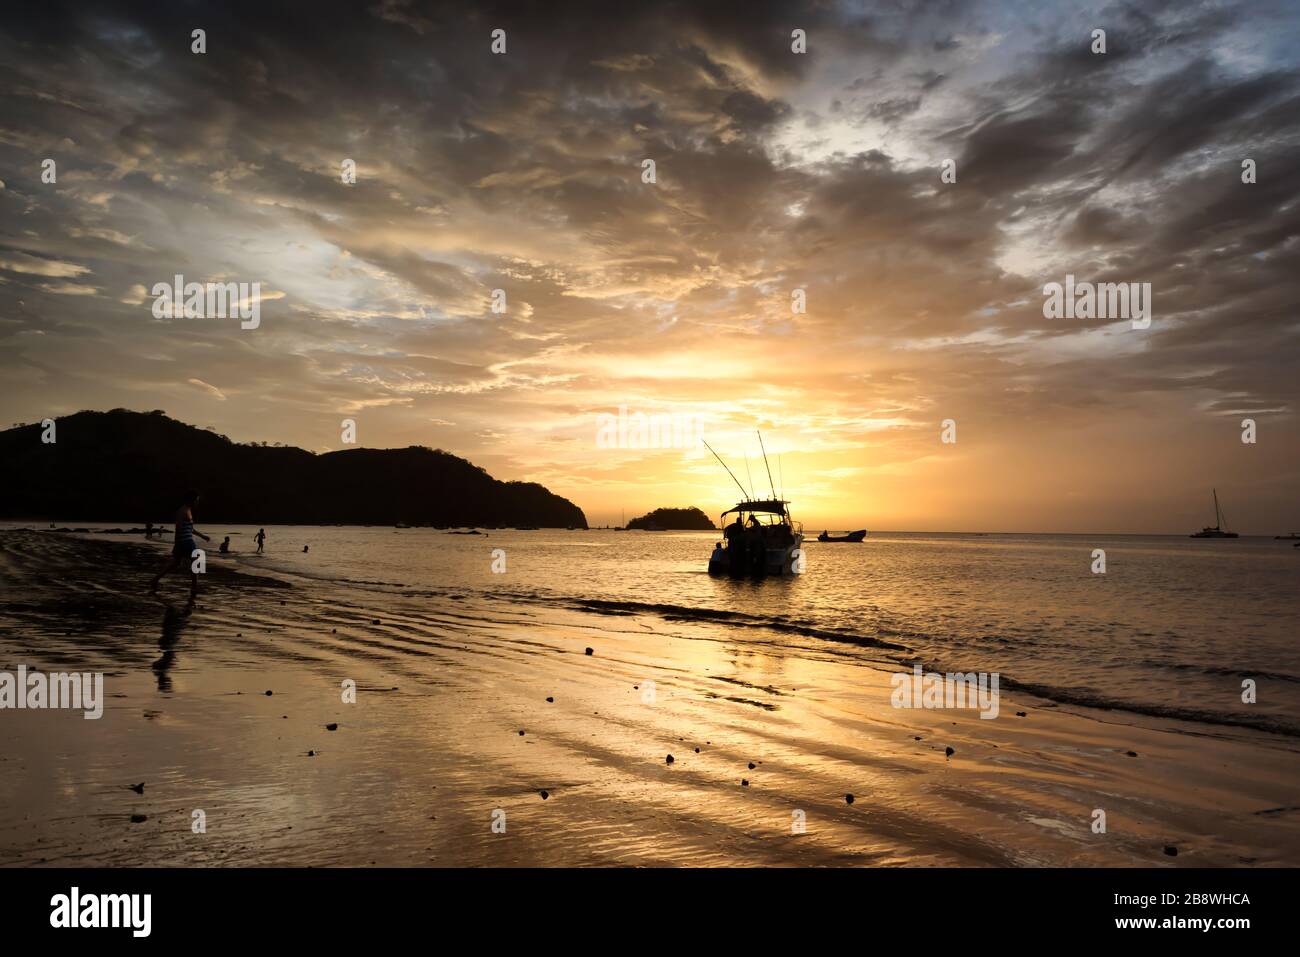 Coucher de soleil sur une plage au Costa Rica. Magnifique paysage de l'océan pacifique. Banque D'Images